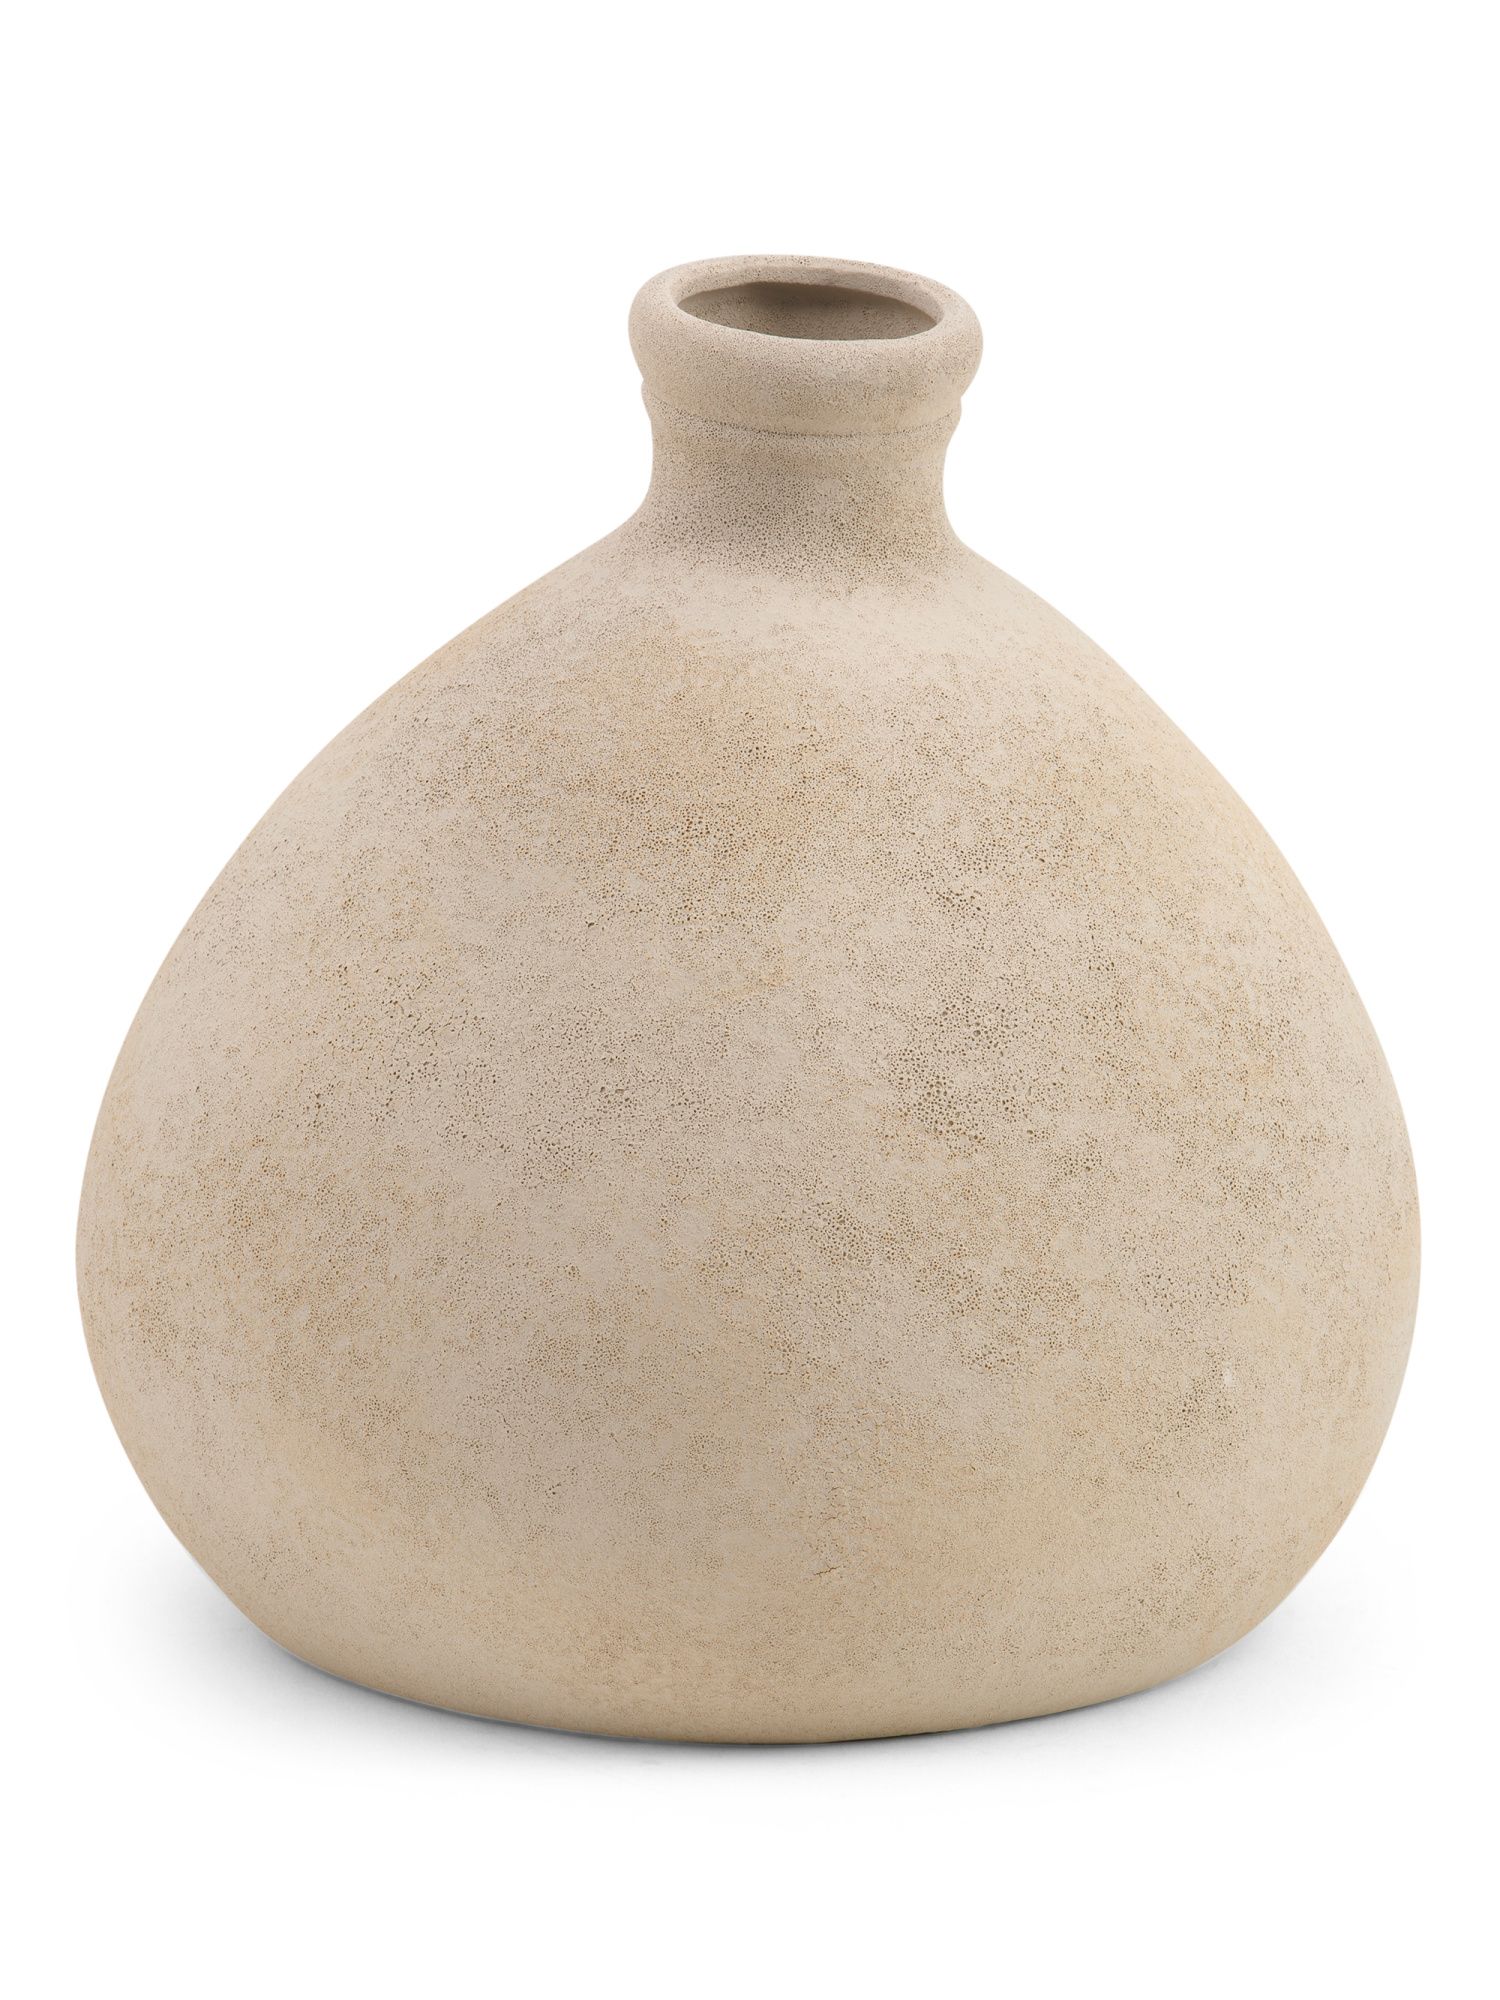 Made In Portugal Ceramic Bottle Vase | TJ Maxx